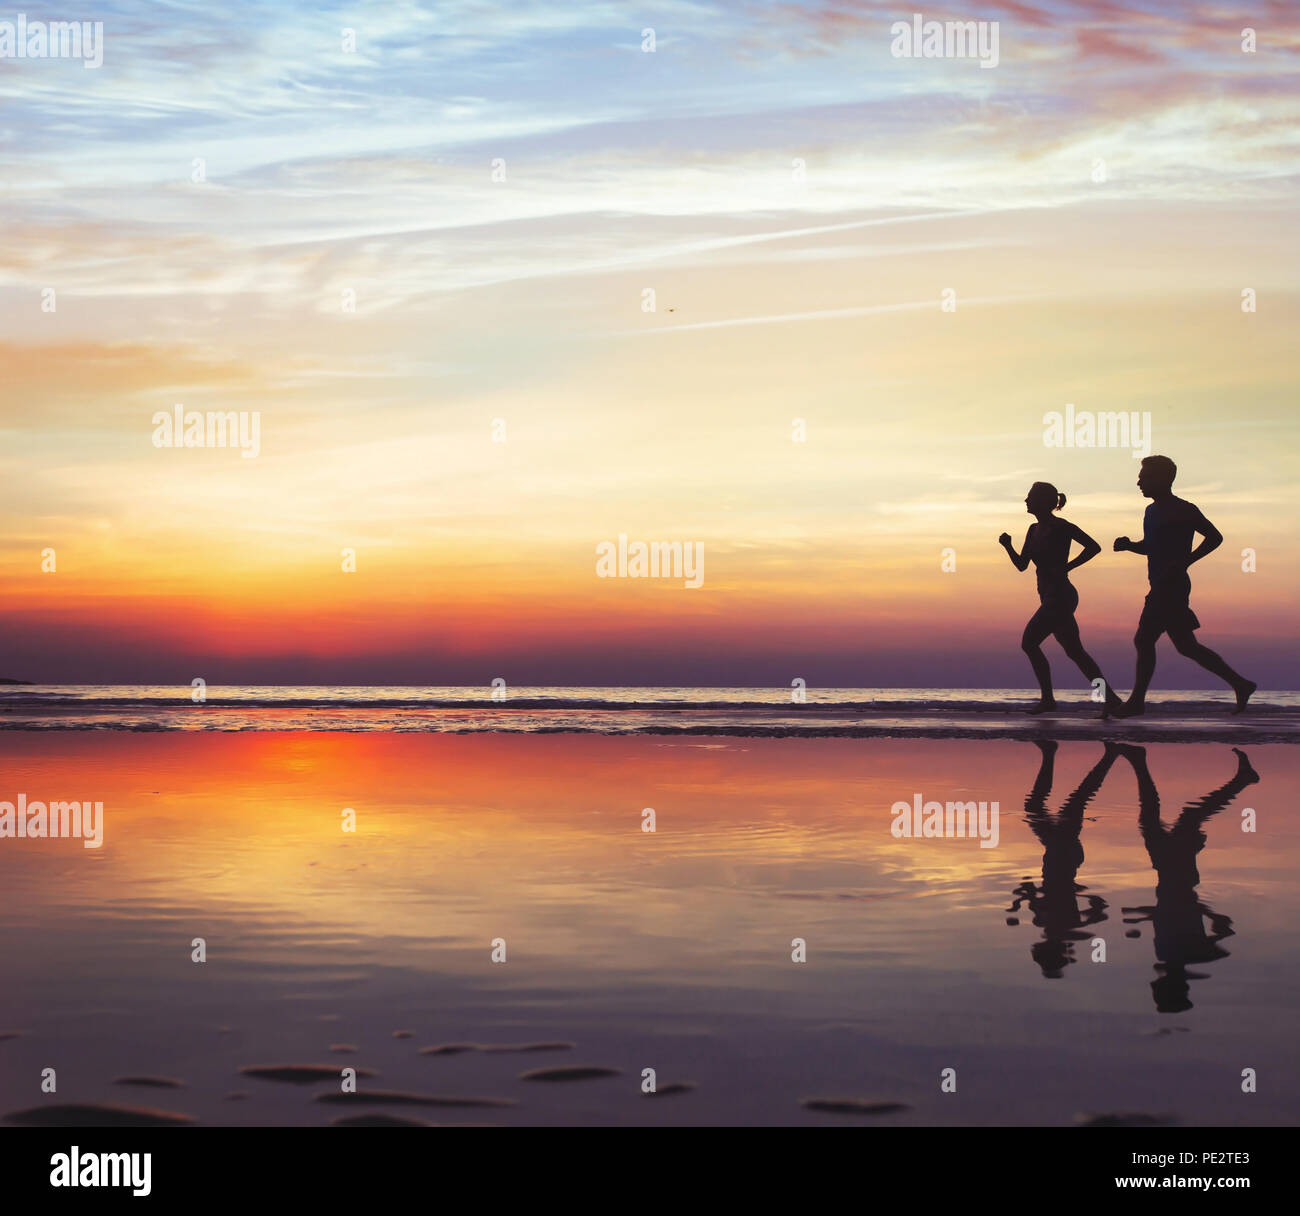 Deporte y salud, dos corredores en la playa, la silueta de la gente haciendo footing al atardecer, el hombre y la mujer un estilo de vida saludable Foto de stock